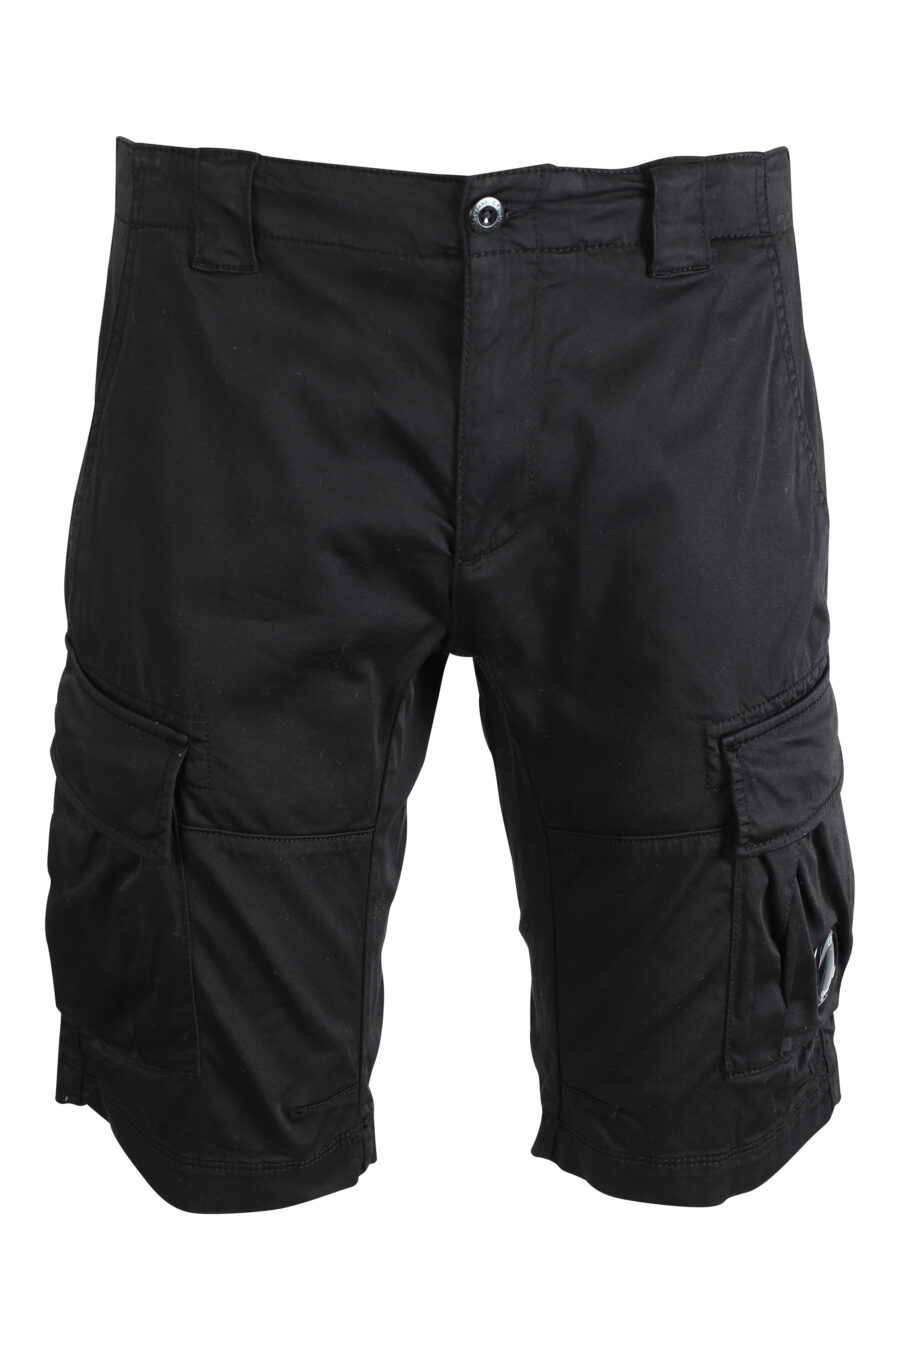 Pantalón corto negro estilo cargo con minilogo circular - IMG 9468